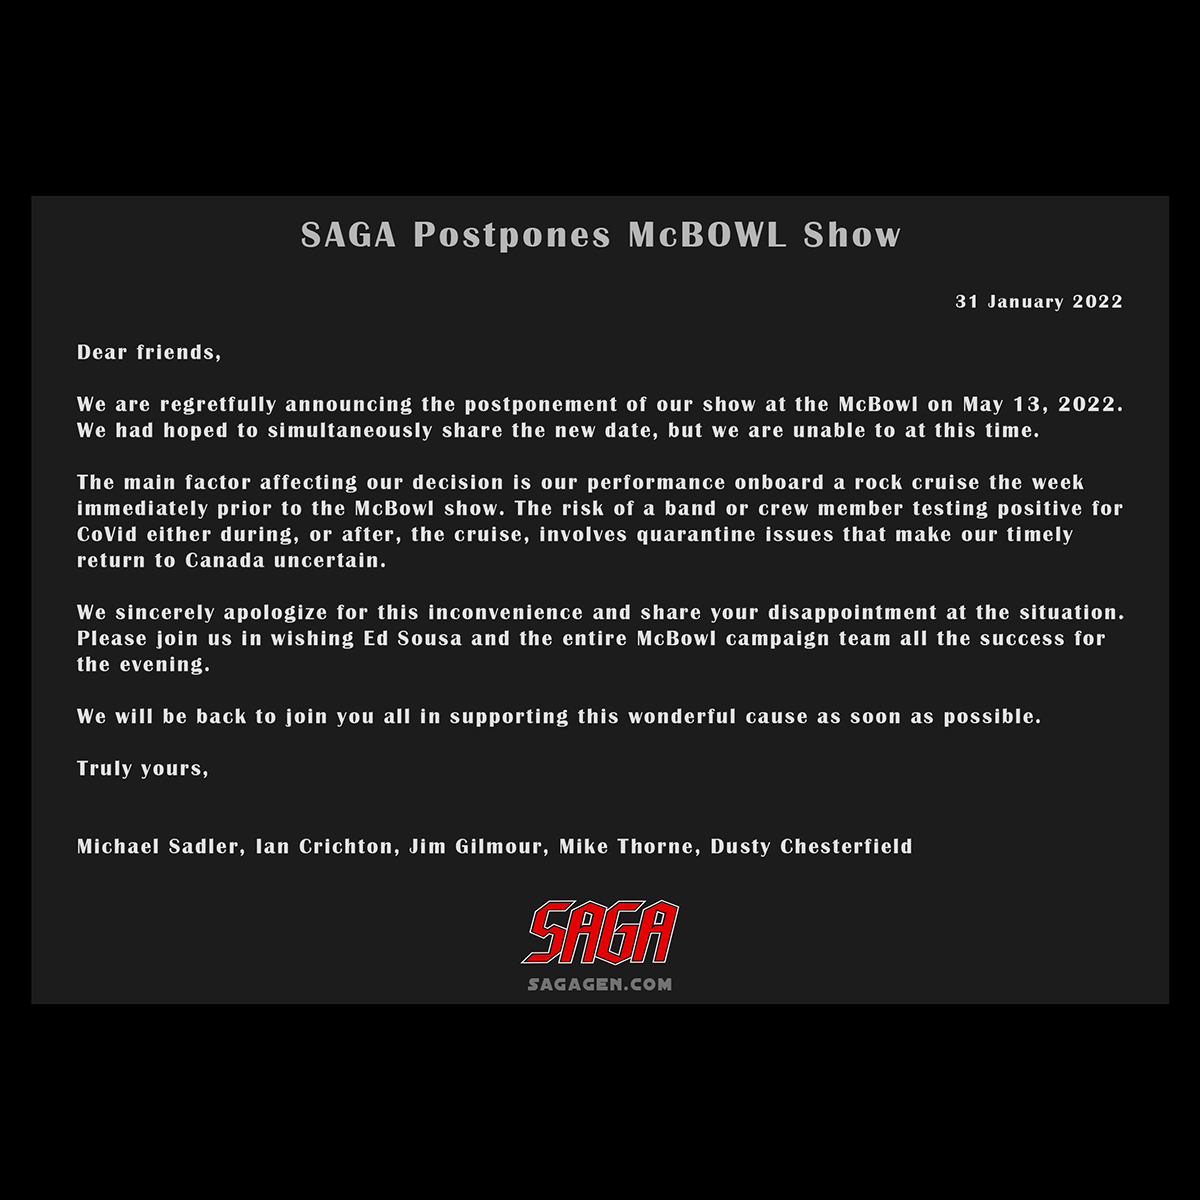 SAGA postpones McBowl Show